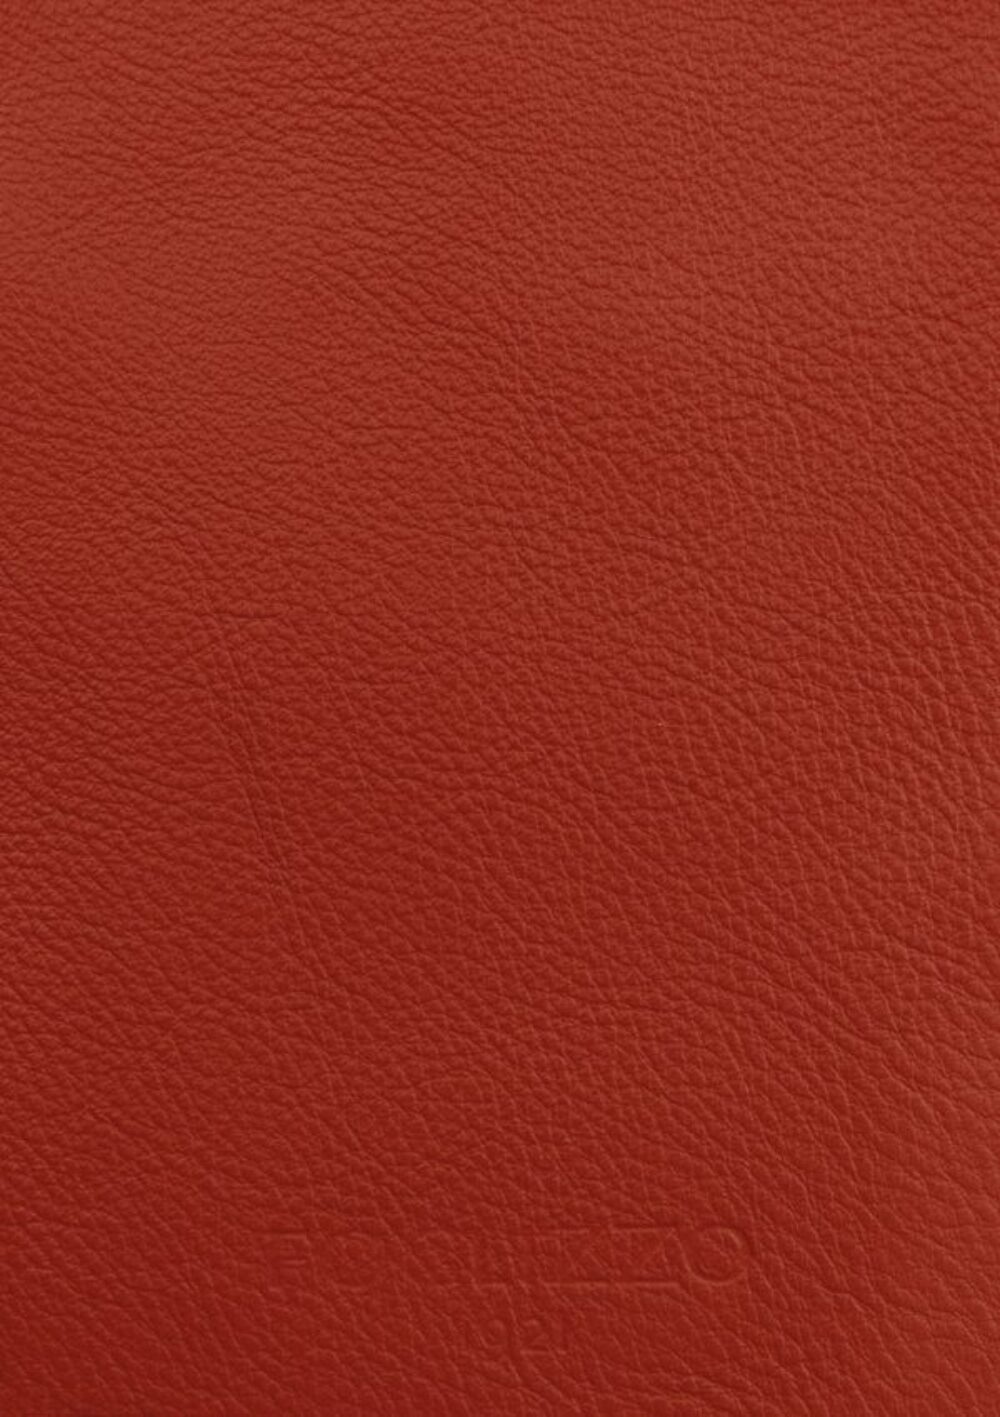 Diseño de lujo y alfombras de alta gama hechas a medida • Burgundy Red Jade